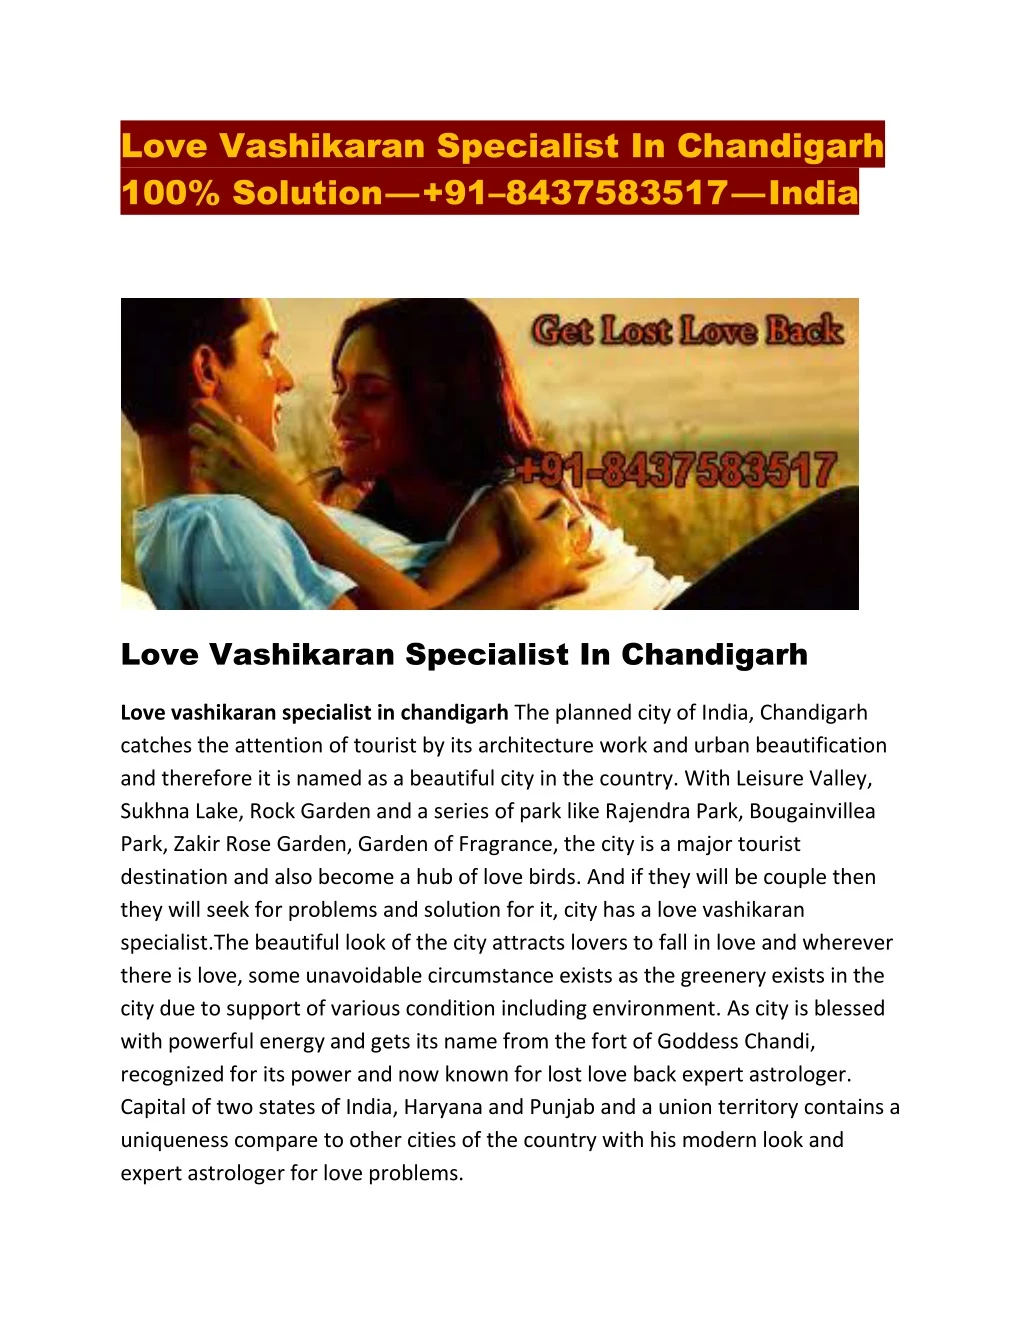 love vashikaran specialist in chandigarh